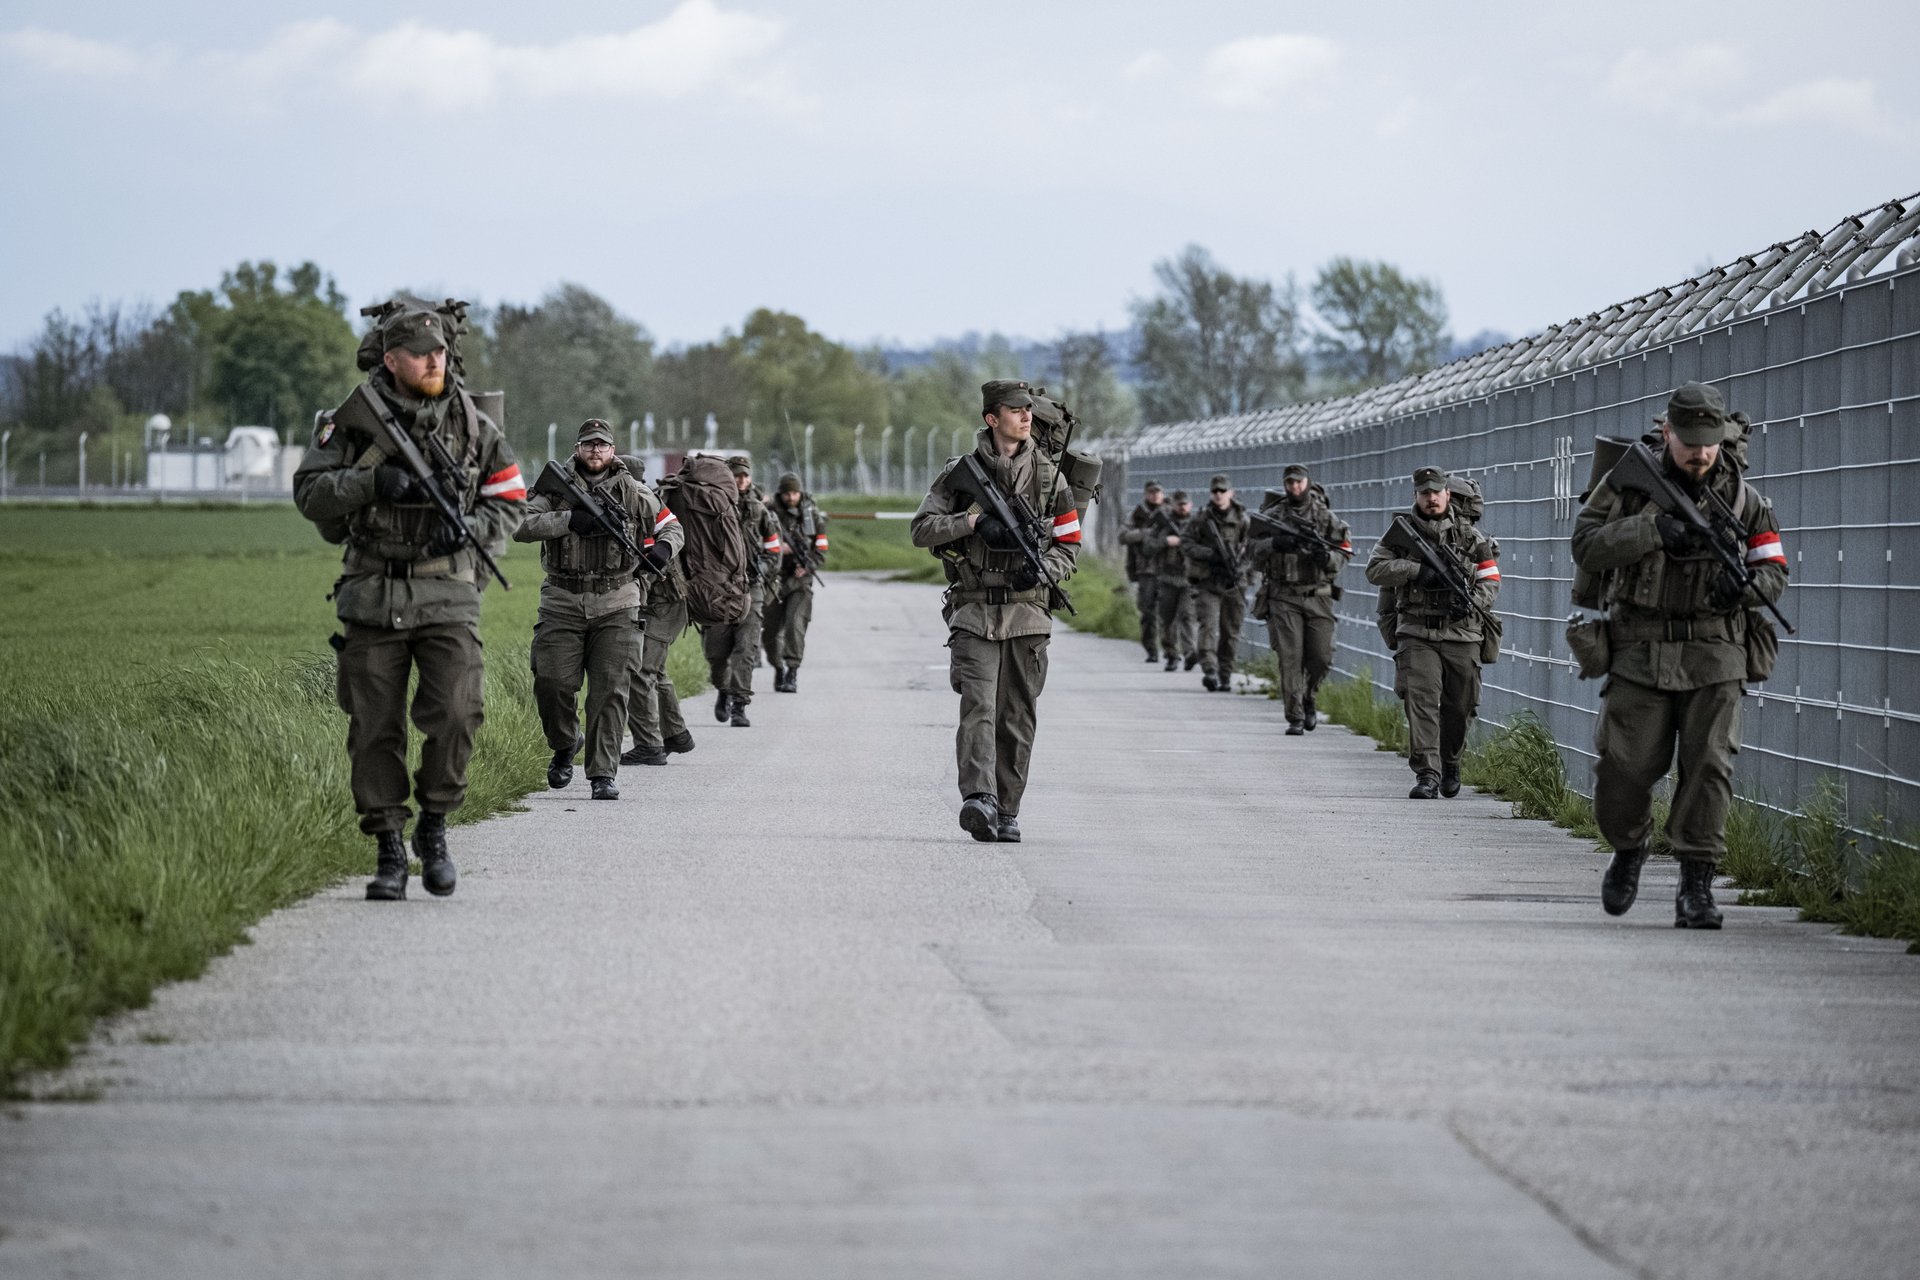 Milizsoldaten des Jägerbataillons Oberösterreich auf Patrouille während einer Übung.